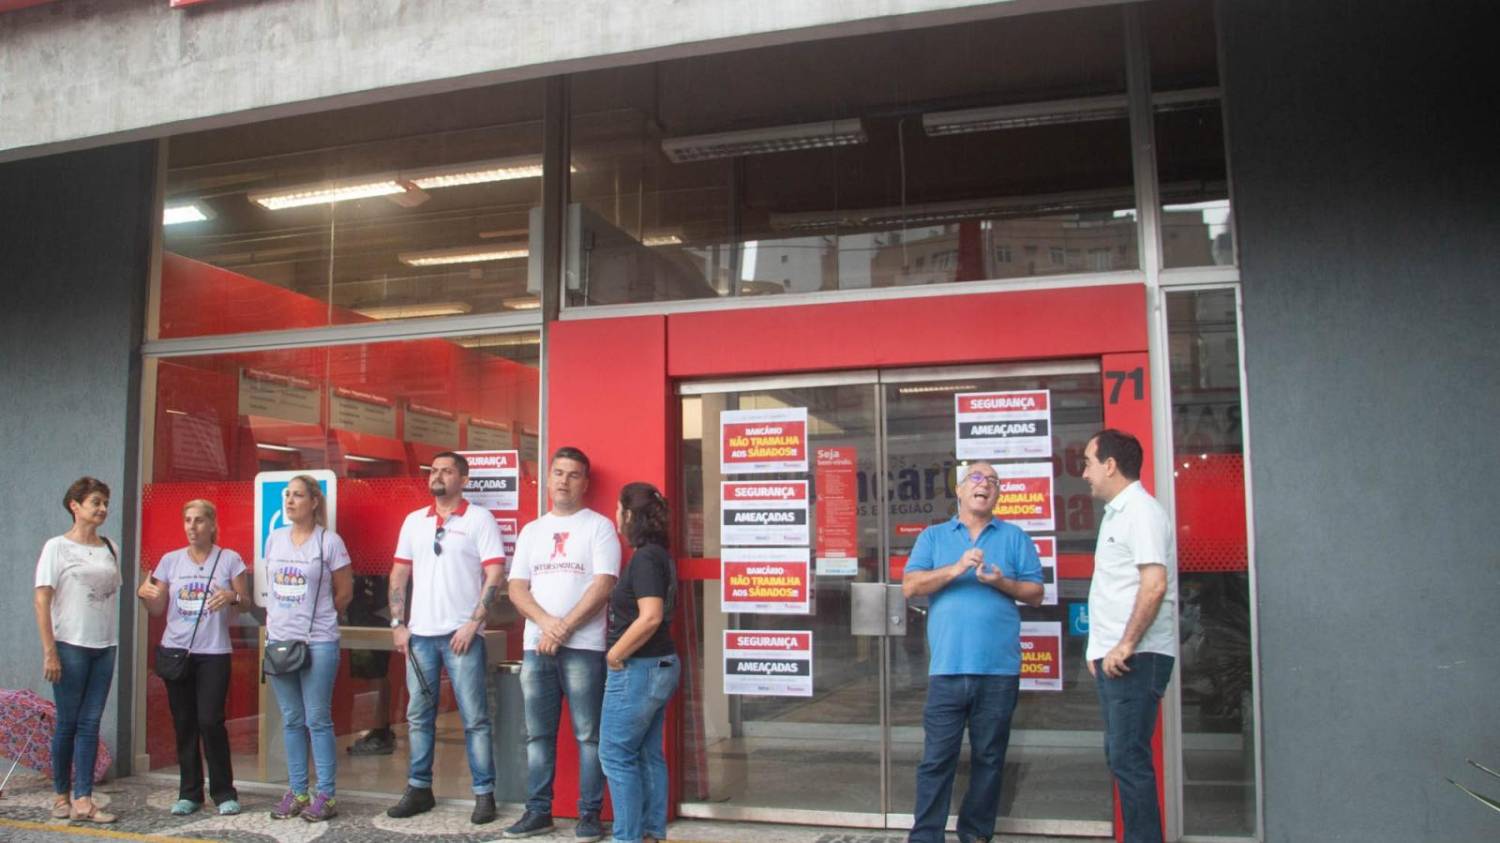 Sindicato pressiona e Santander recoloca portas giratórias